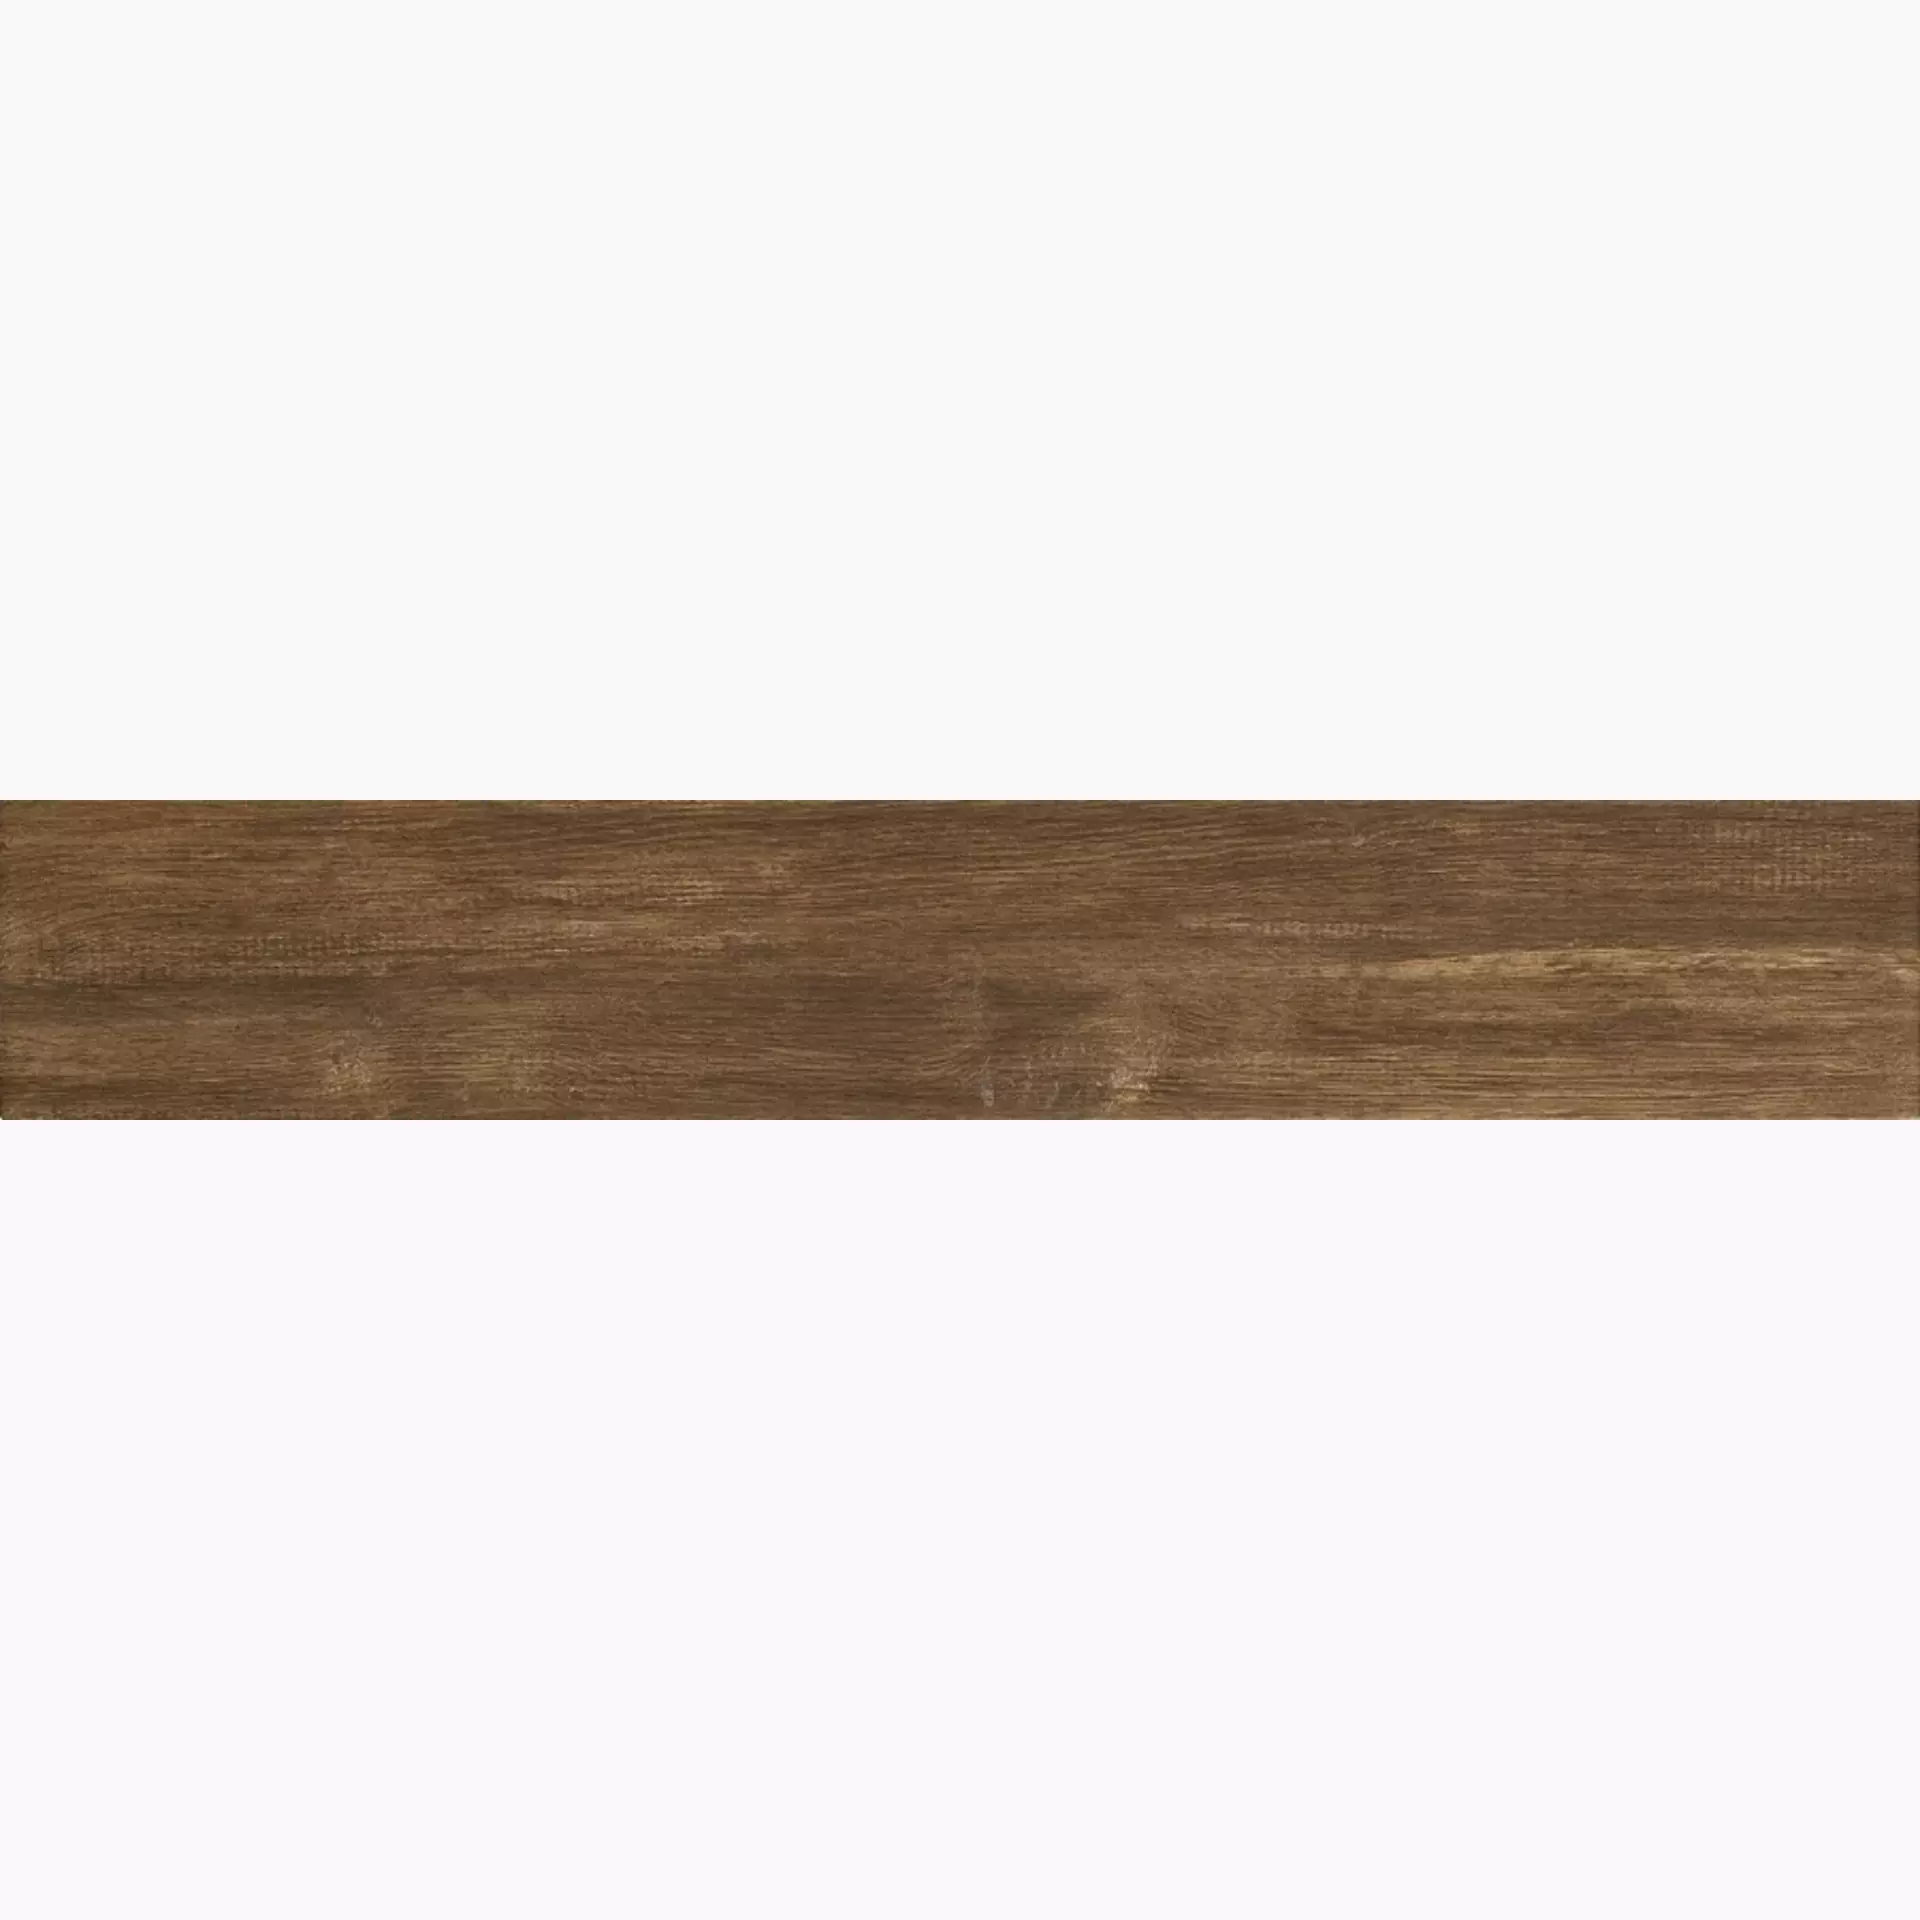 Iris E-Wood Oak Lappato Vintage 894021 15x90cm 9mm